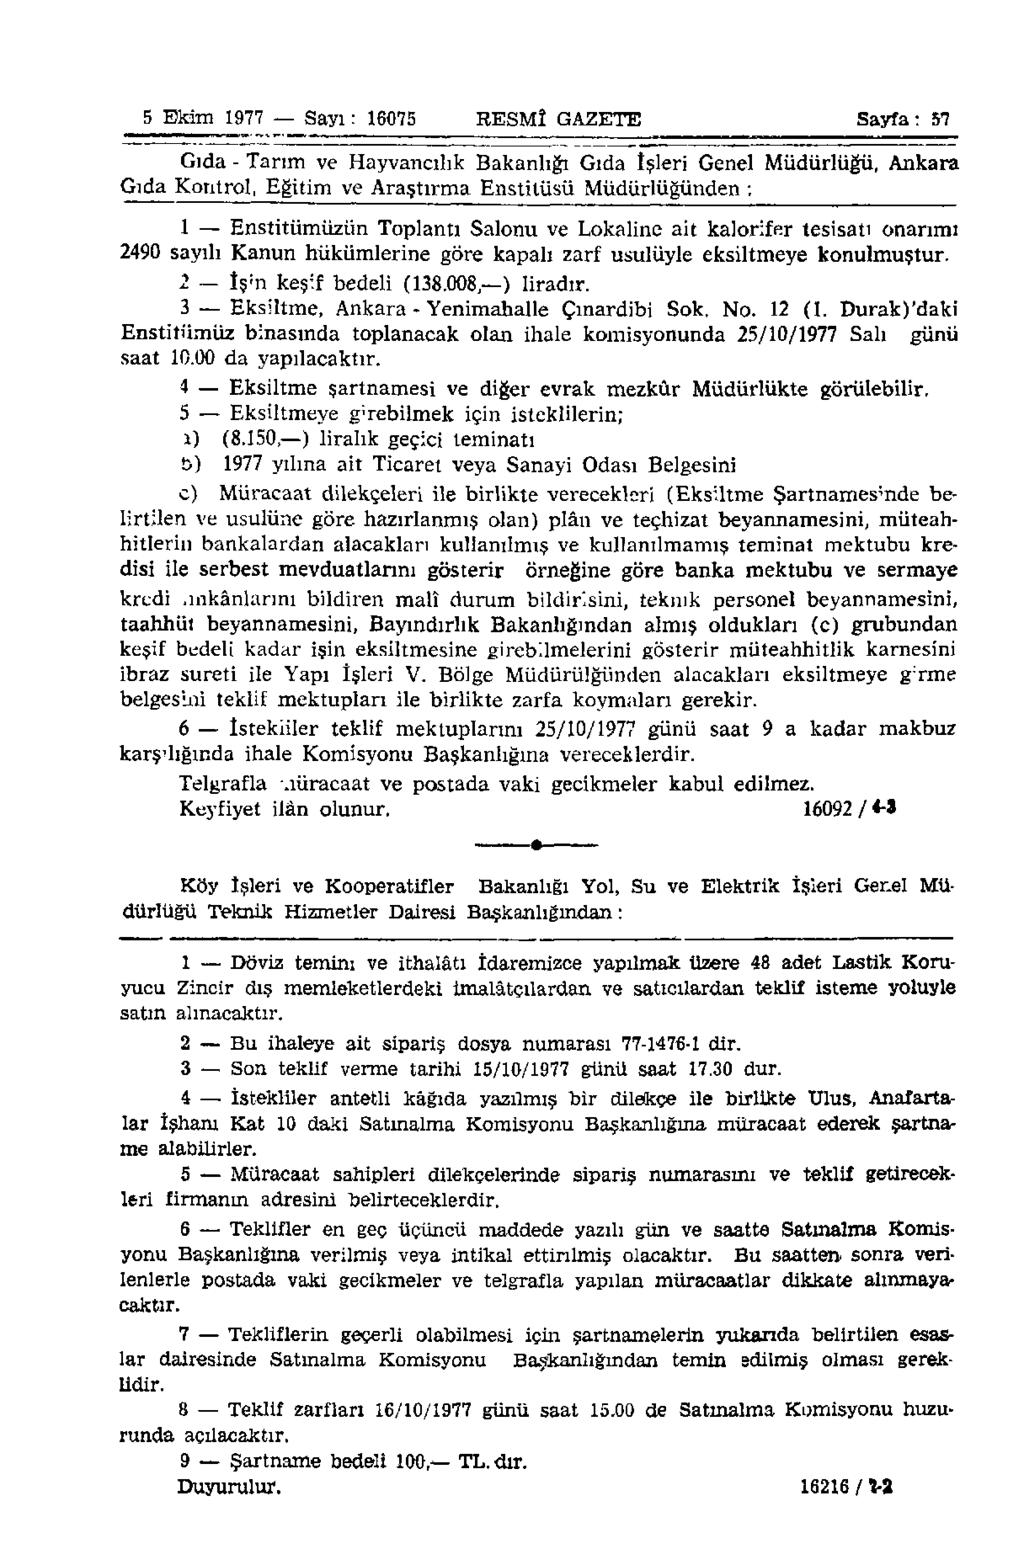 5 Ekim 1977 Sayı: 16075 RESMÎ GAZETE Sayfa: 57 Gıda - Tarım ve Hayvancılık Bakanlığı Gıda îşleri Genel Müdürlüğü, Ankara Gıda Kontrol, Eğitim ve Araştırma Enstitüsü Müdürlüğünden : 1 Enstitümüzün